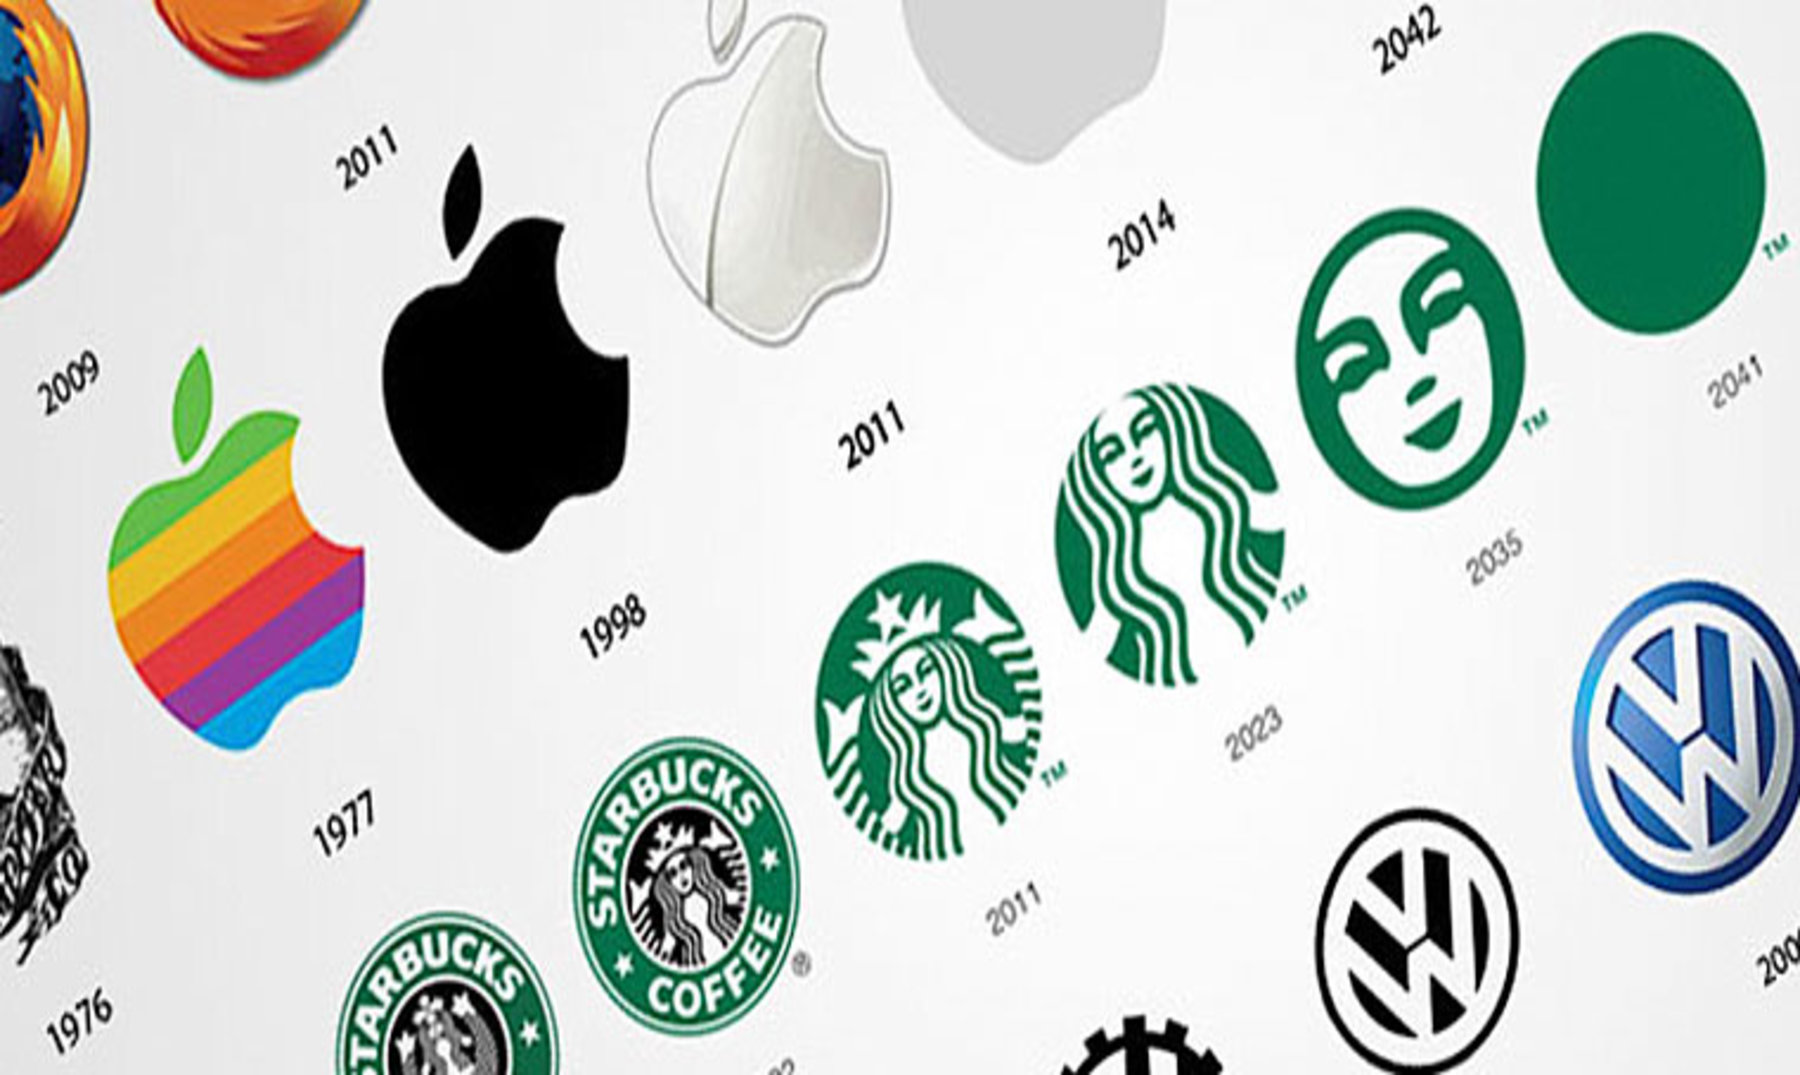 Disea Gratis Logos De Empresa En Minutos Adobe Spark